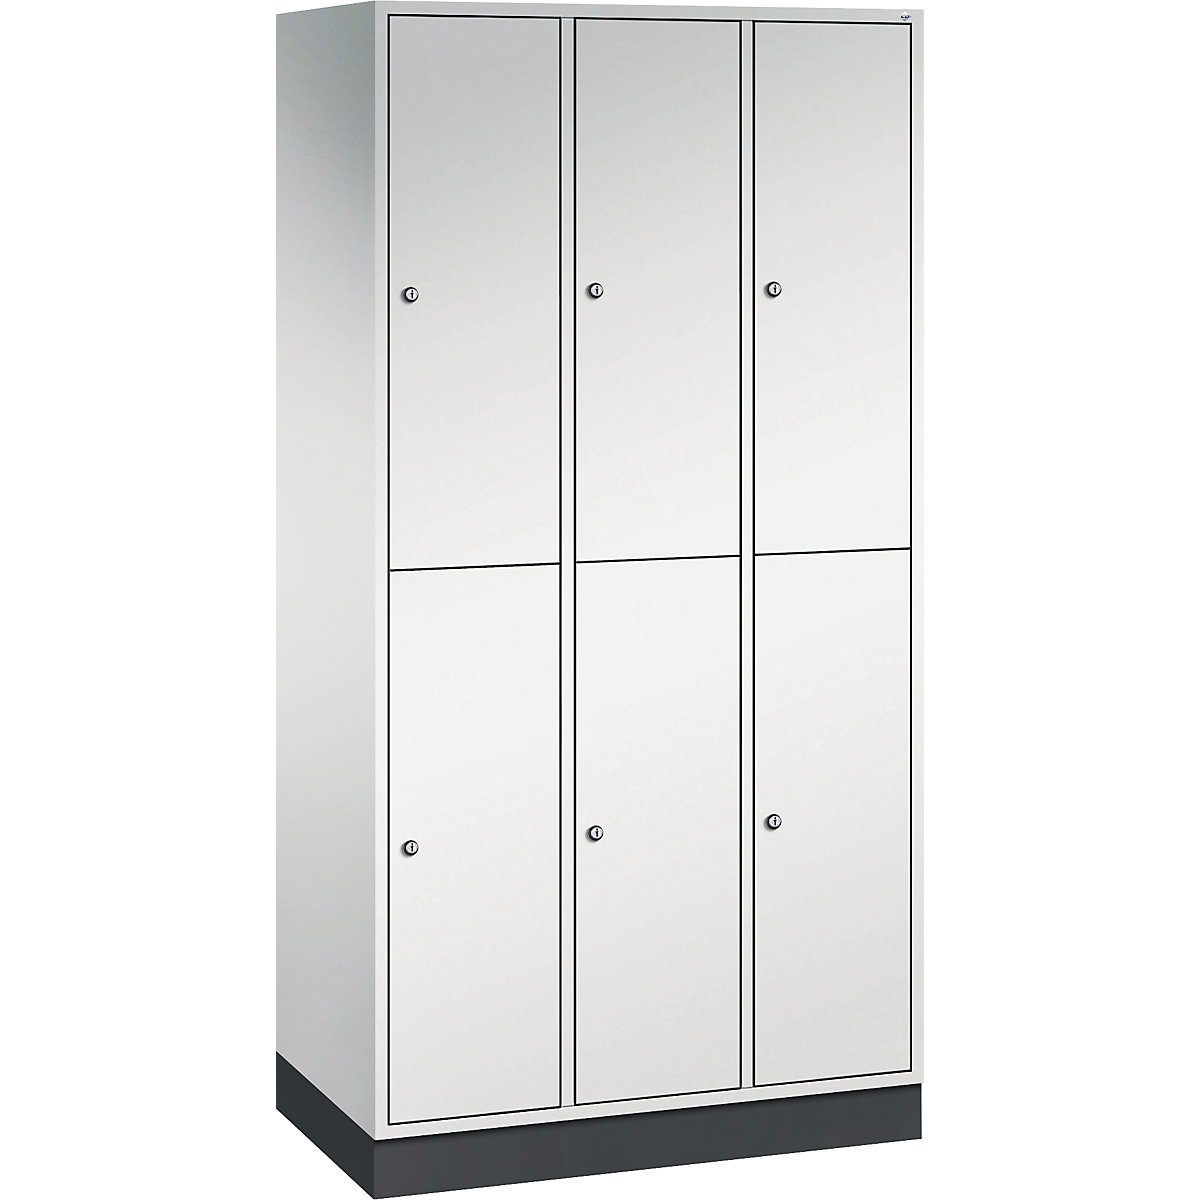 INTRO double tier steel cloakroom locker – C+P, WxD 920 x 500 mm, 6 compartments, light grey body, light grey doors